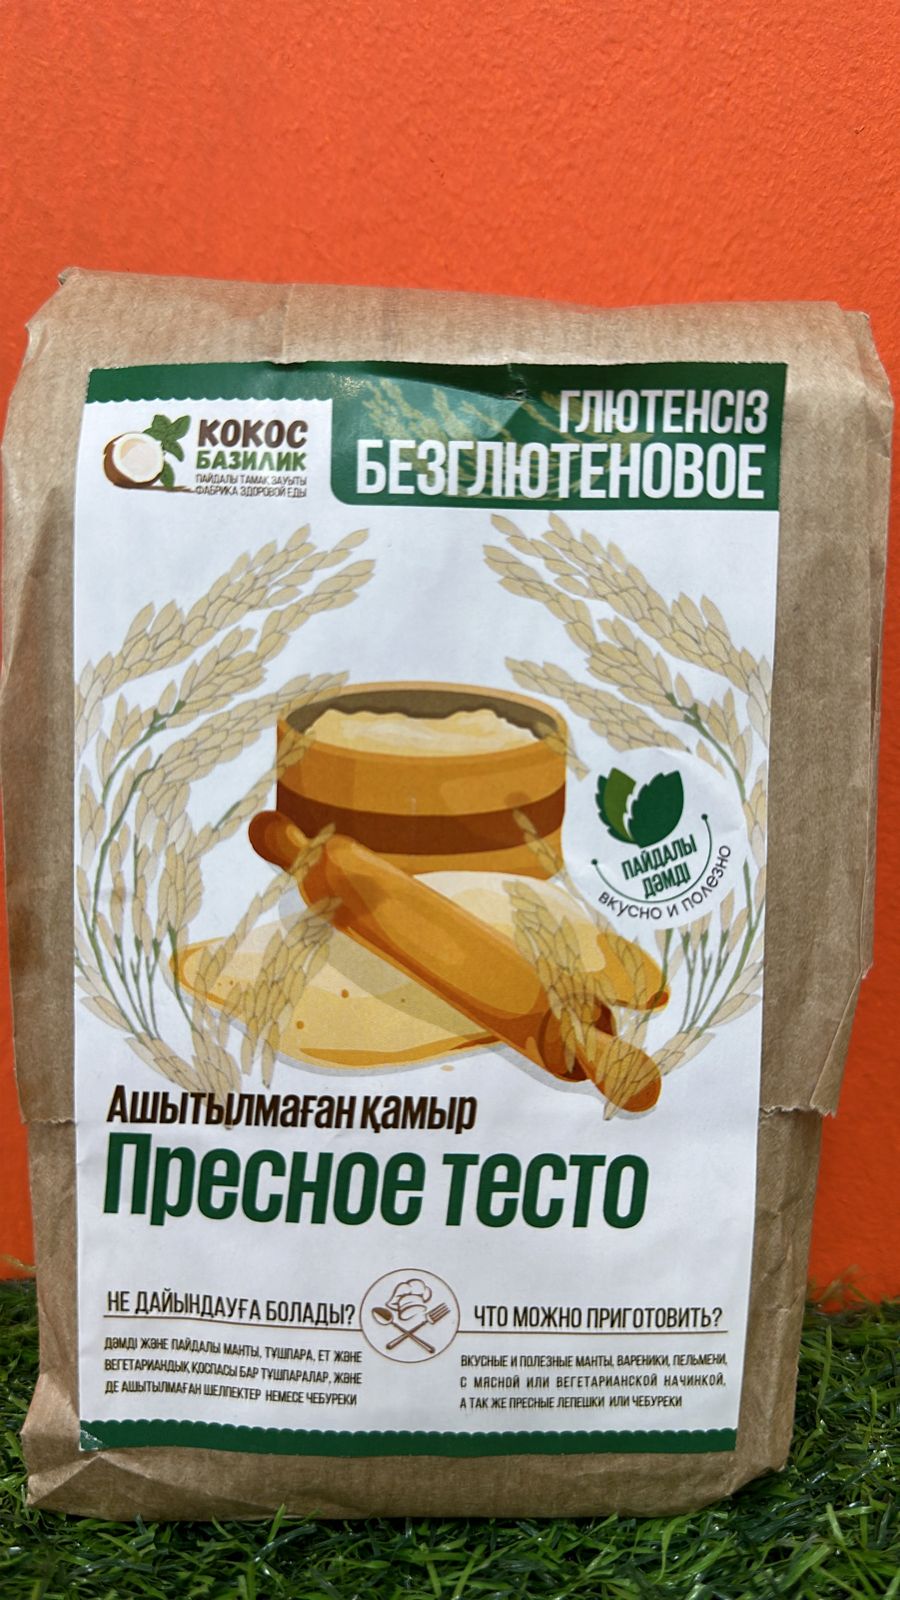 Кокос-Базилик, Пресное тесто без глютена 500 гр